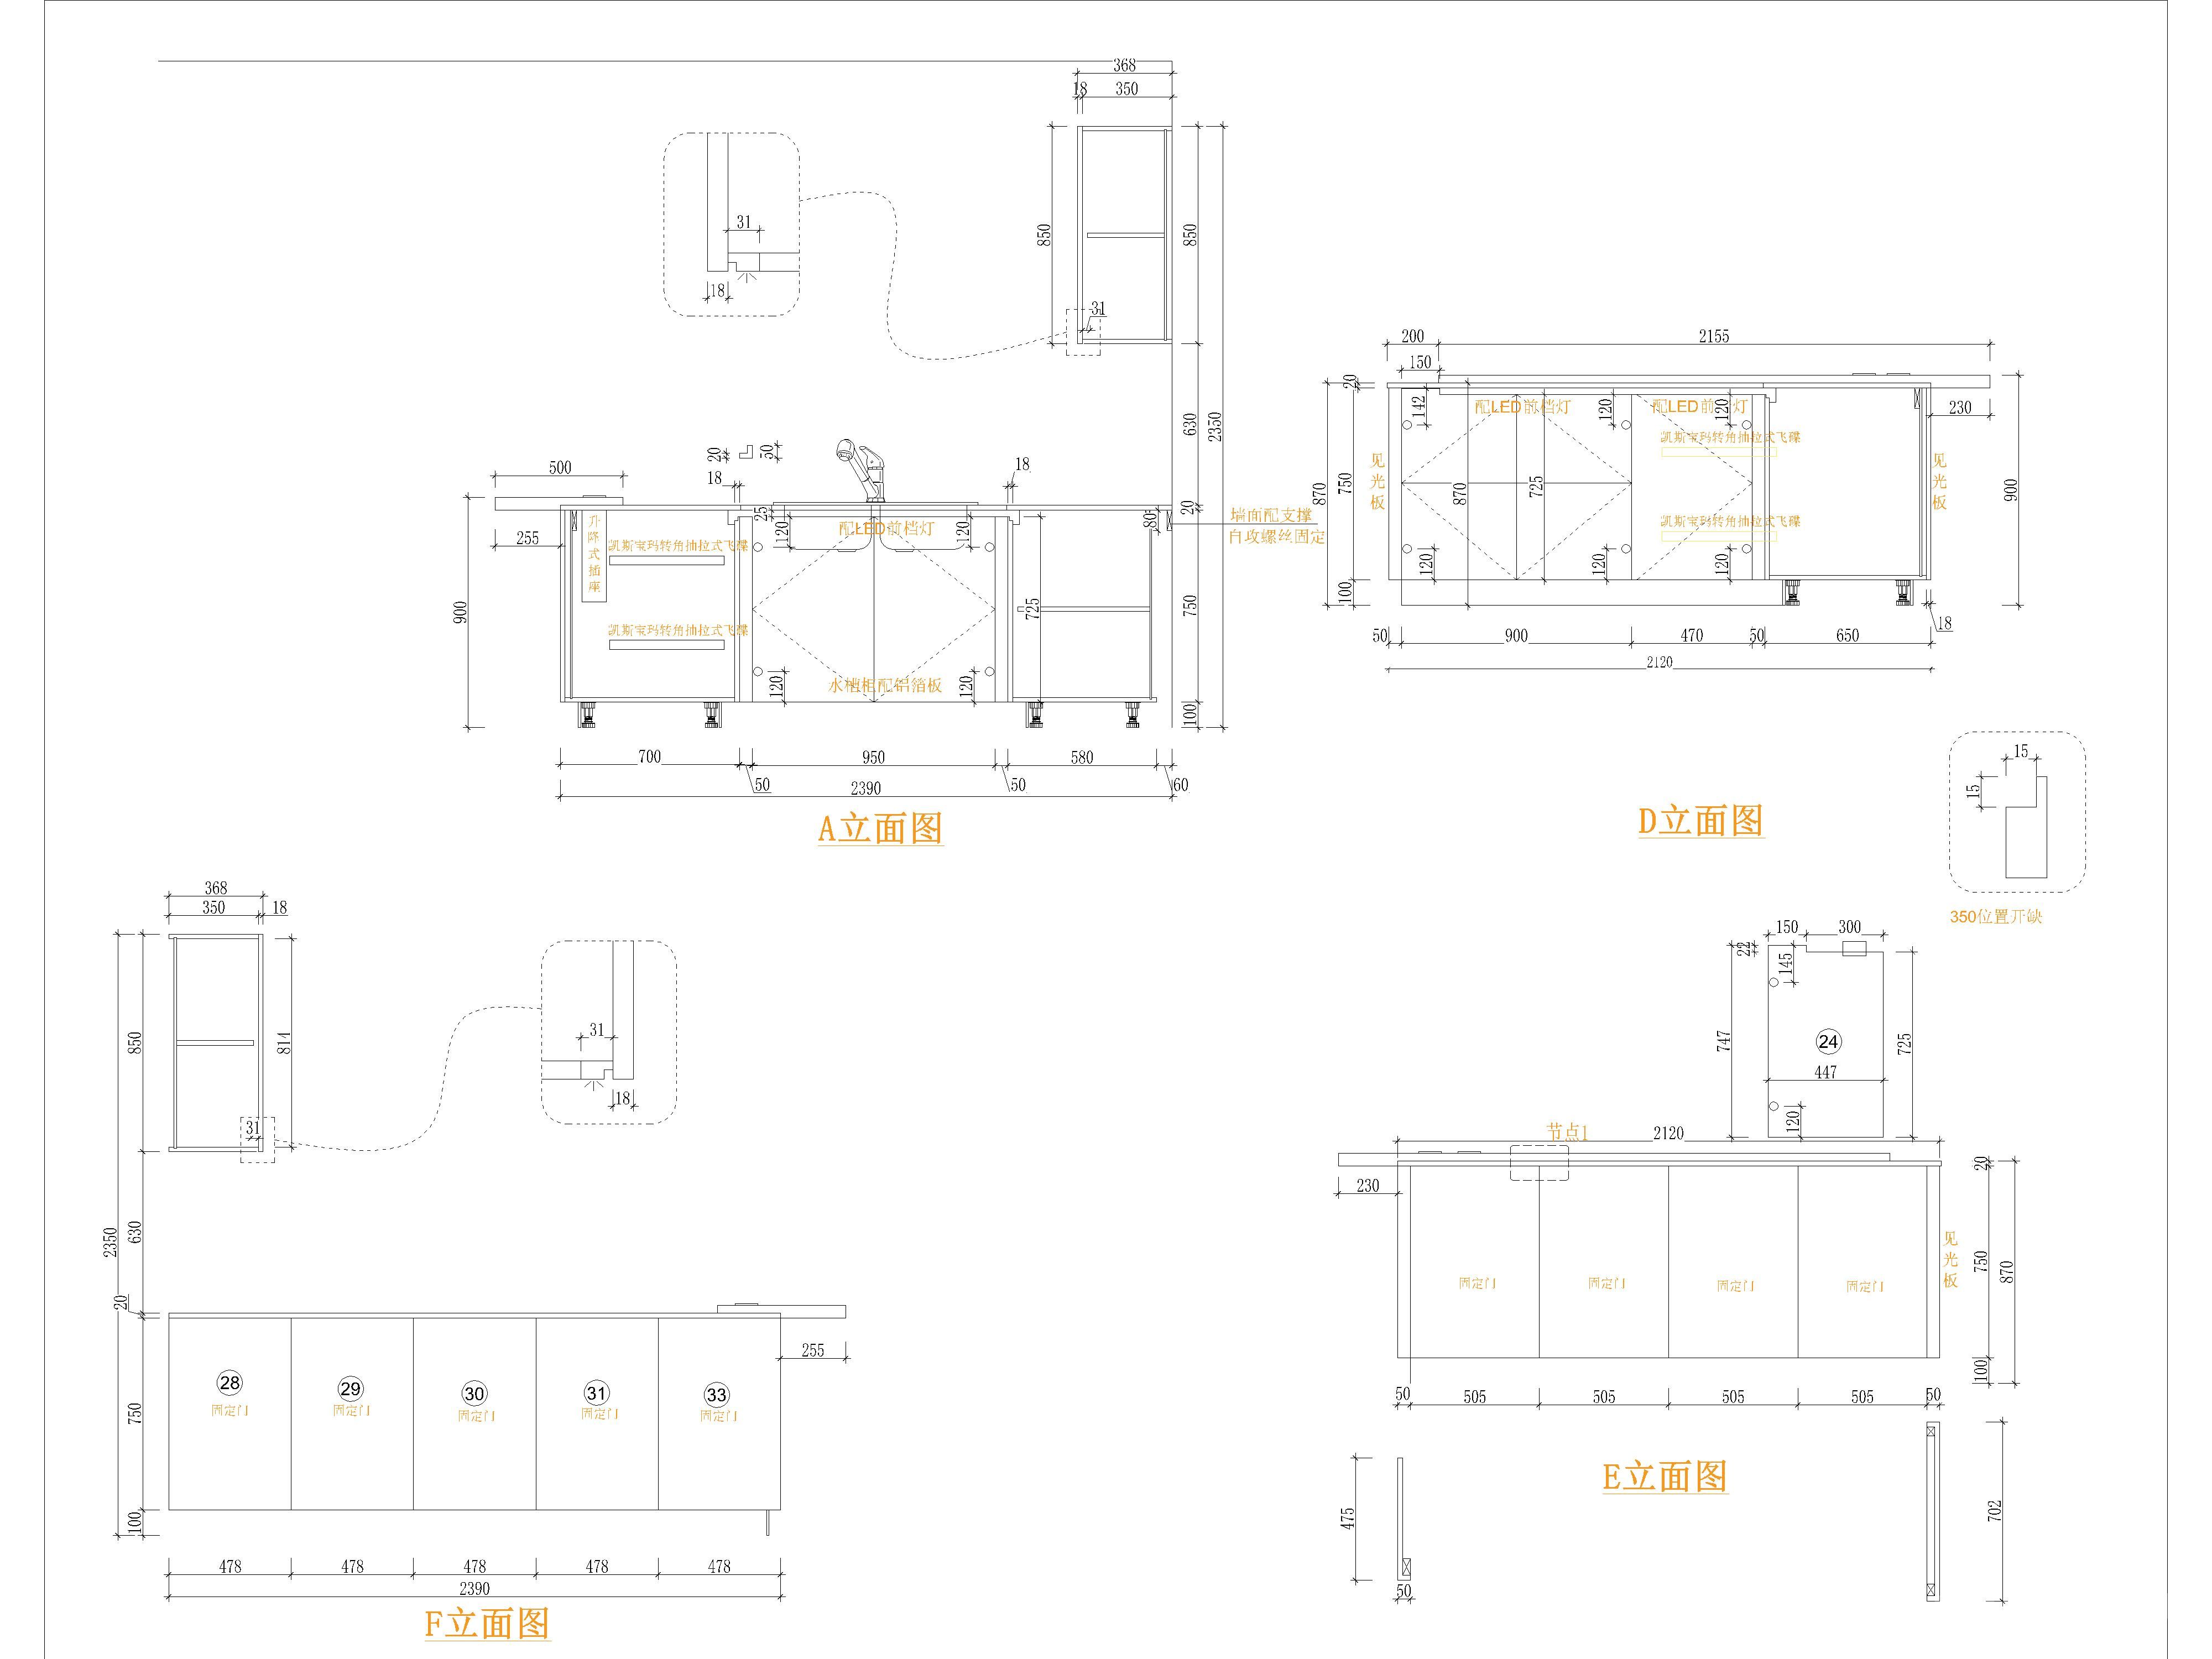 定制家居家具橱柜案例及工艺标准设计规范cad图纸合集施工图